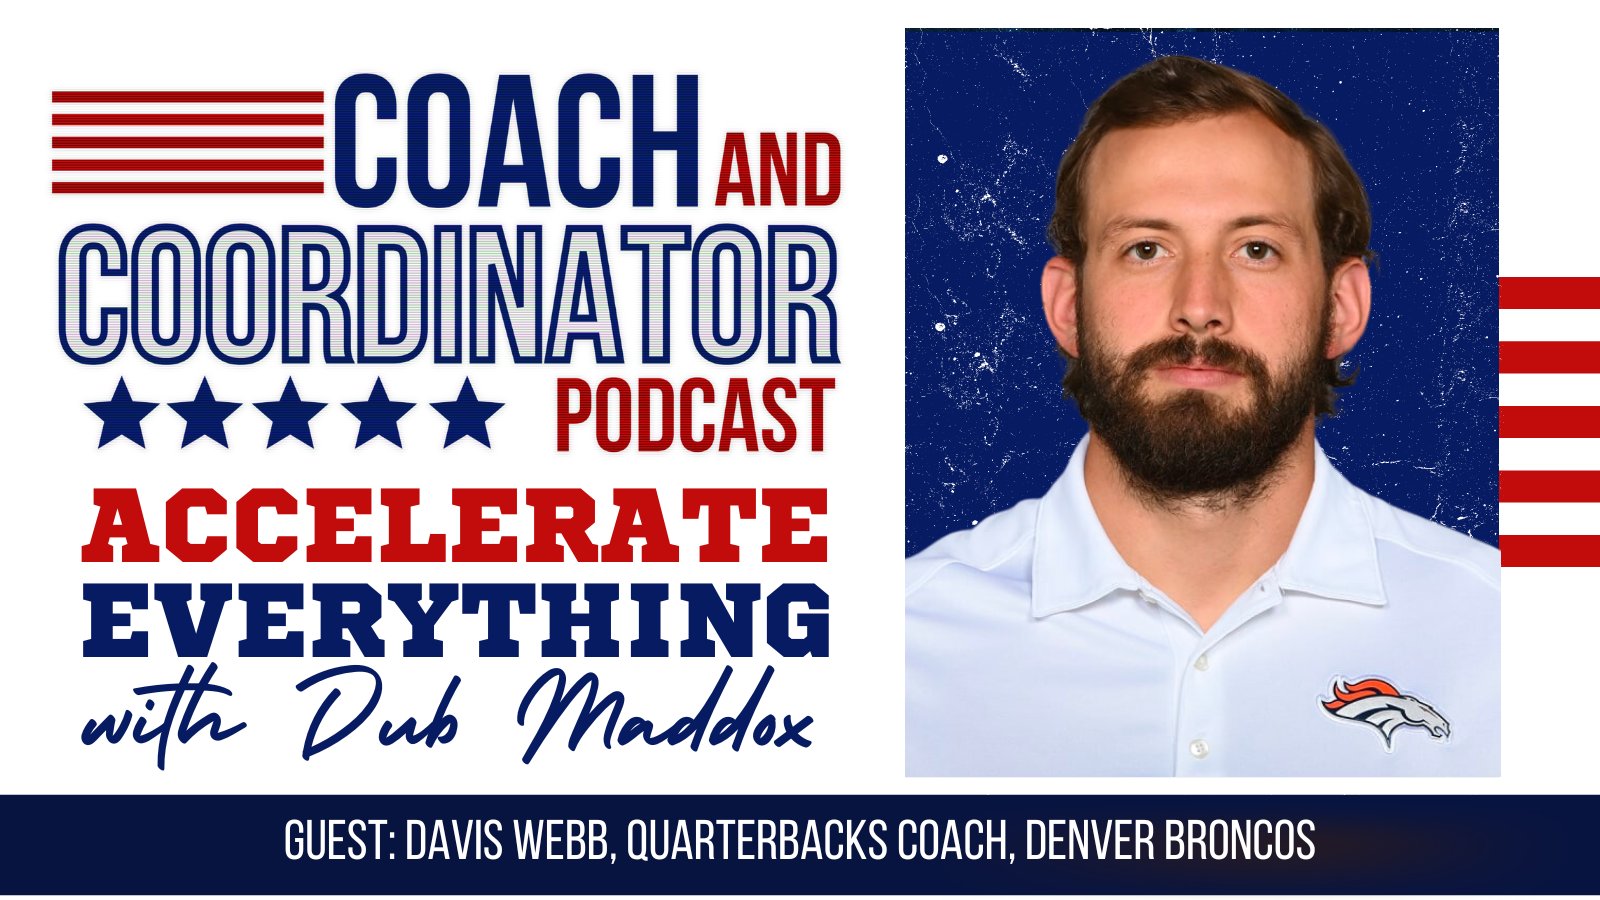 Davis Webb, QB Coach, Denver Broncos